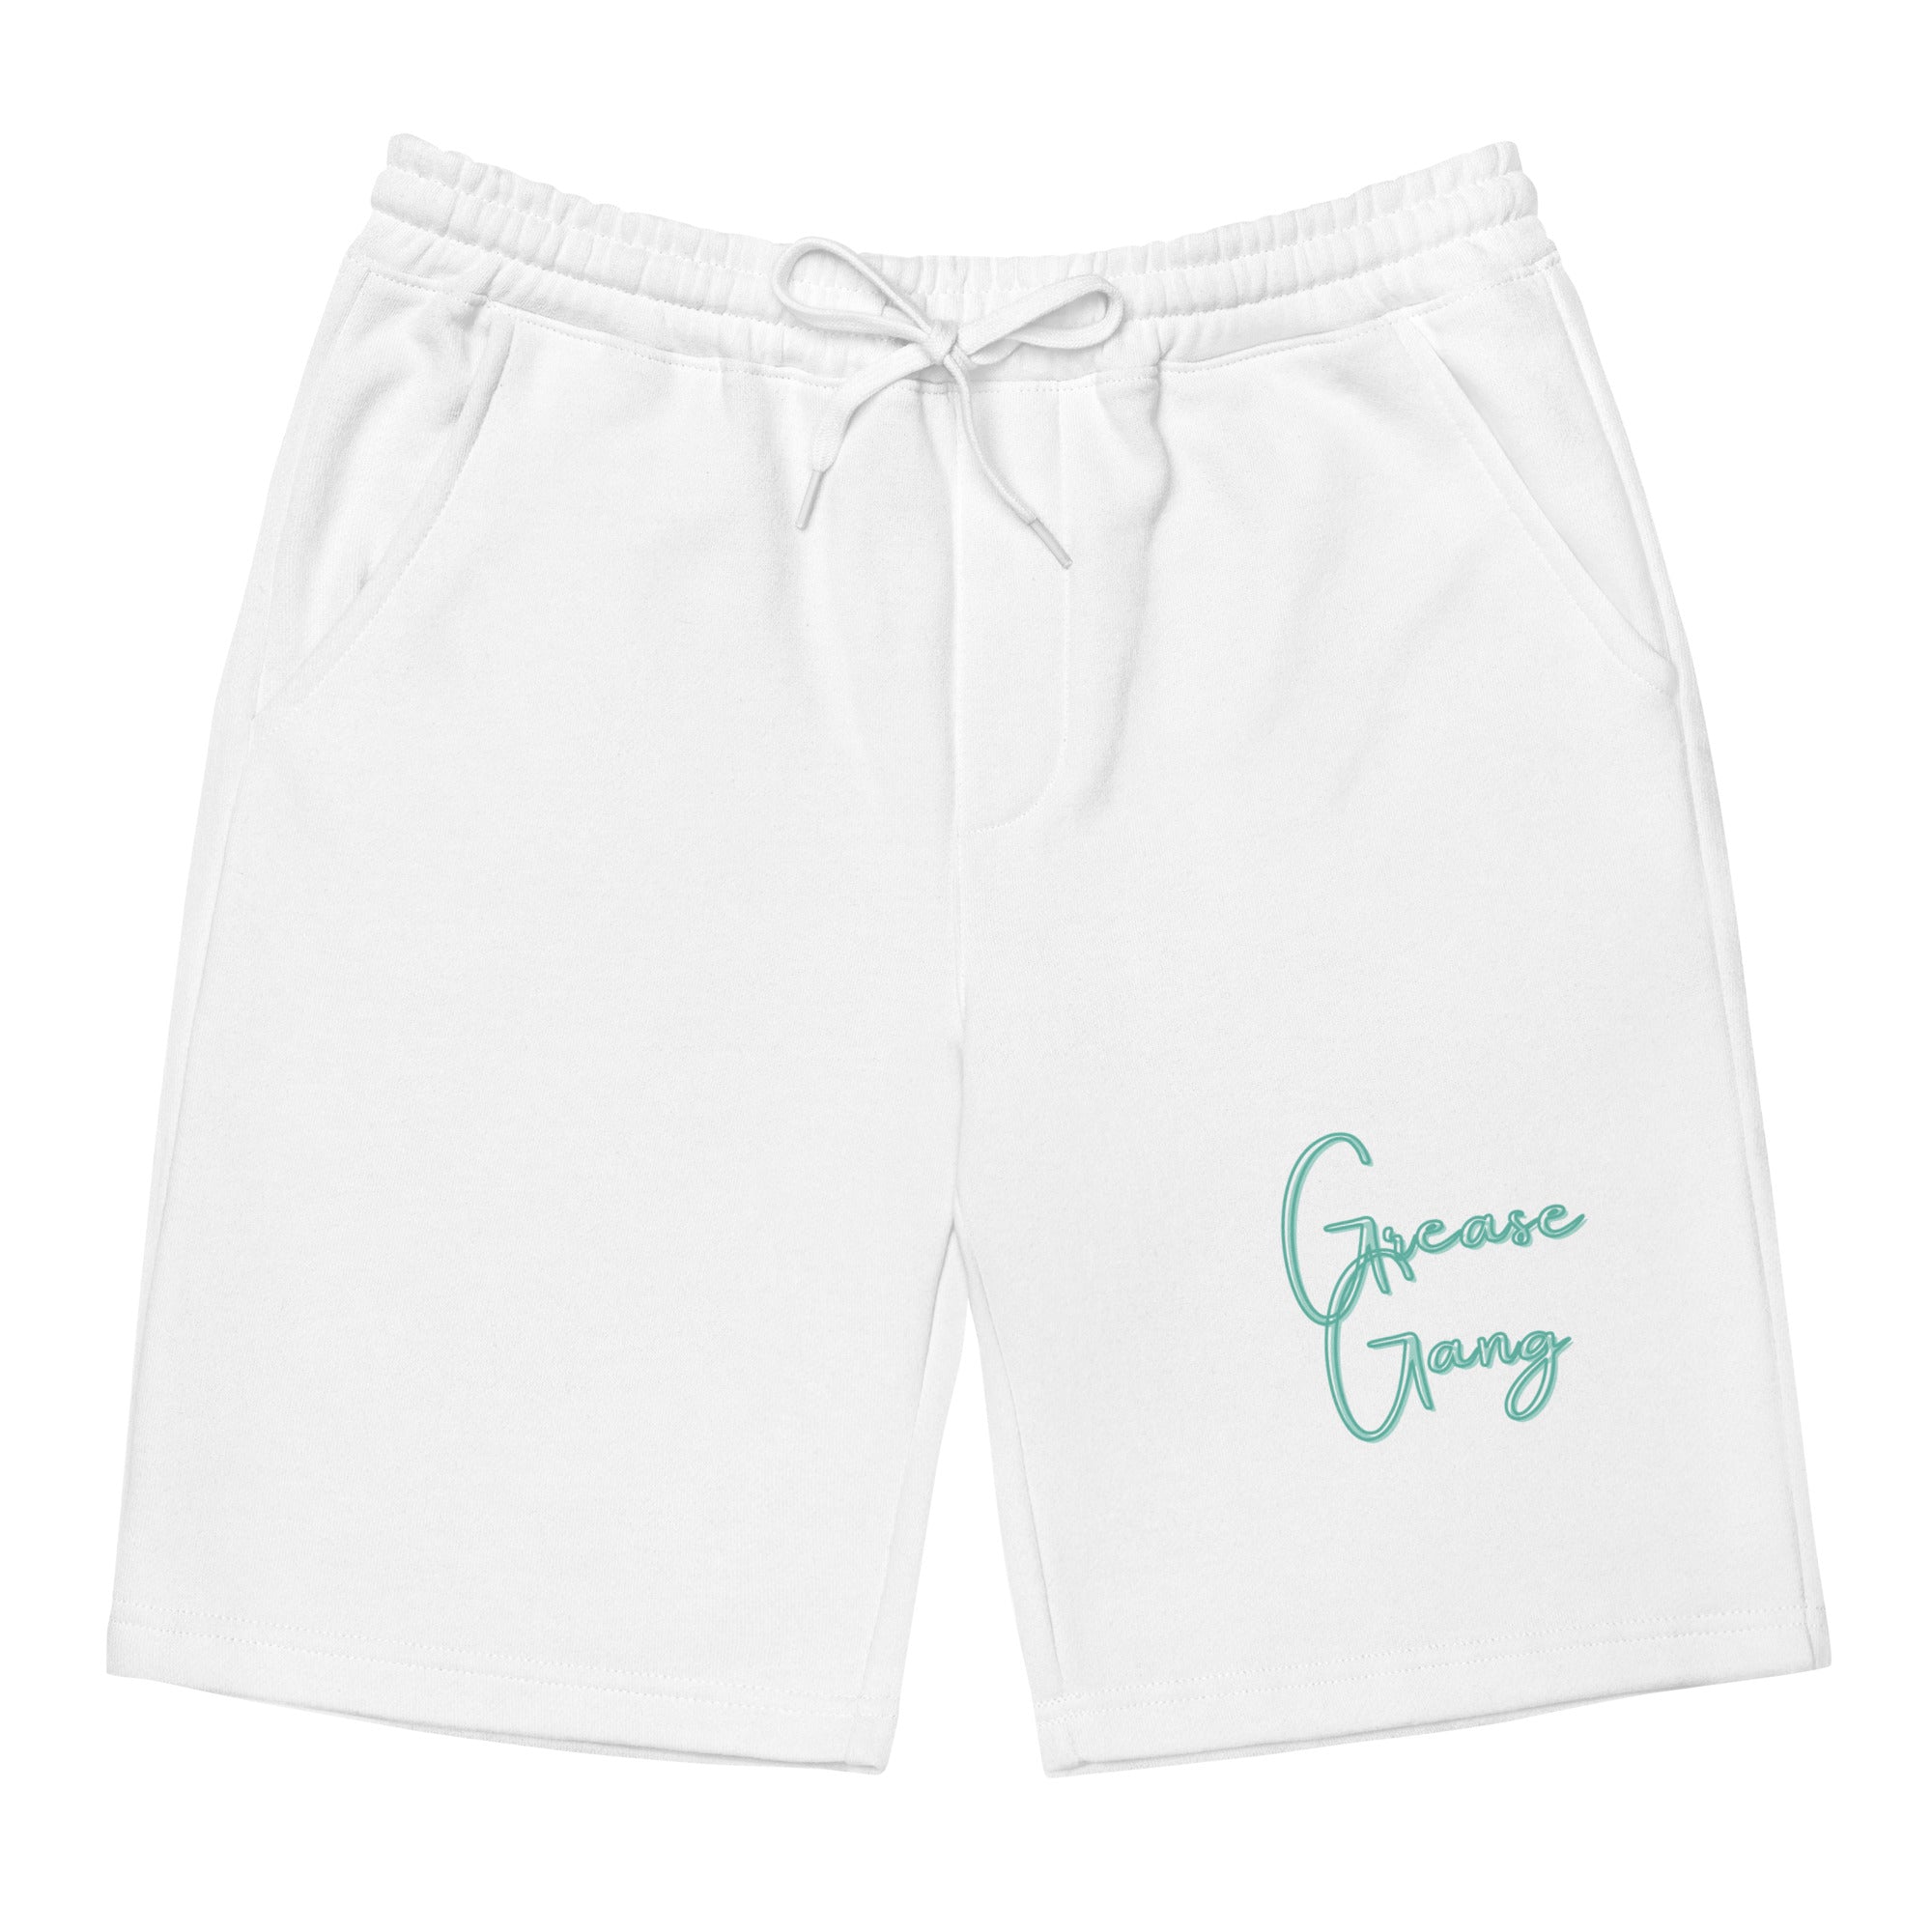 YB Goode GG fleece shorts